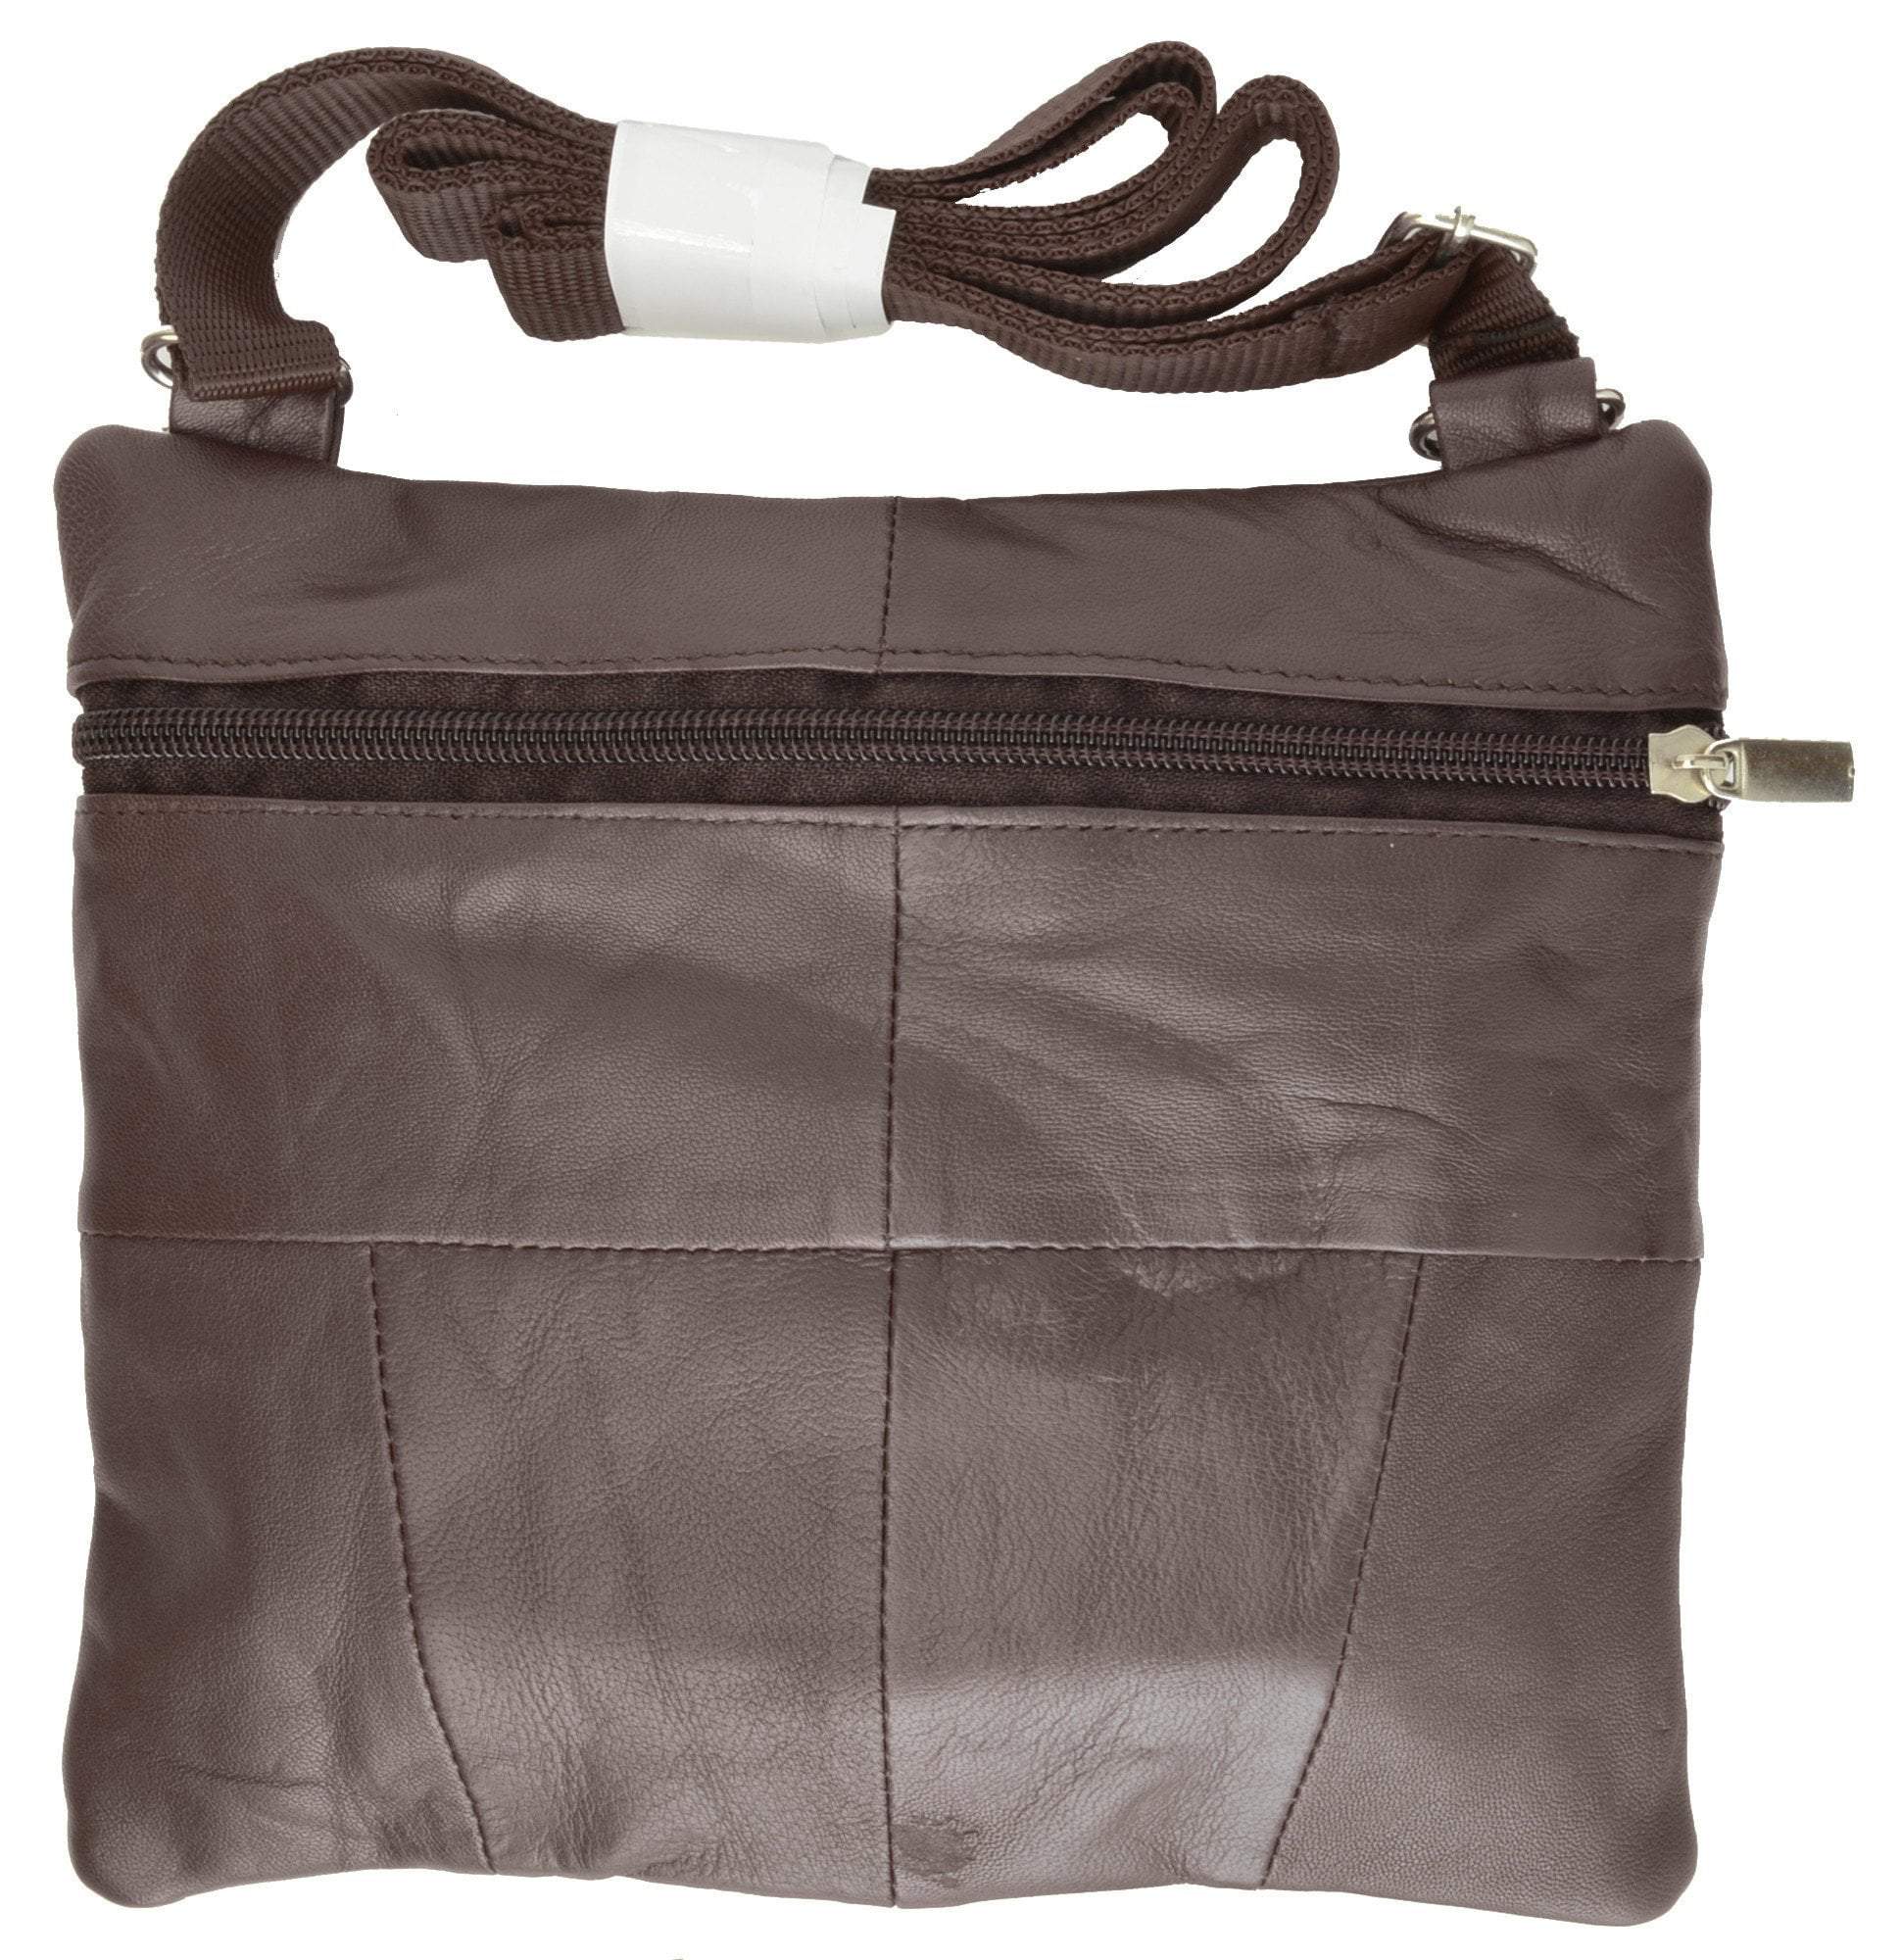 Marshal Wallet Soft Leather Cross Body Bag Purse Shoulder Bag 5 Pocket Organizer Micro HandbagTravel Wallet Multiple Colors HN907 , Adult Unisex, Size